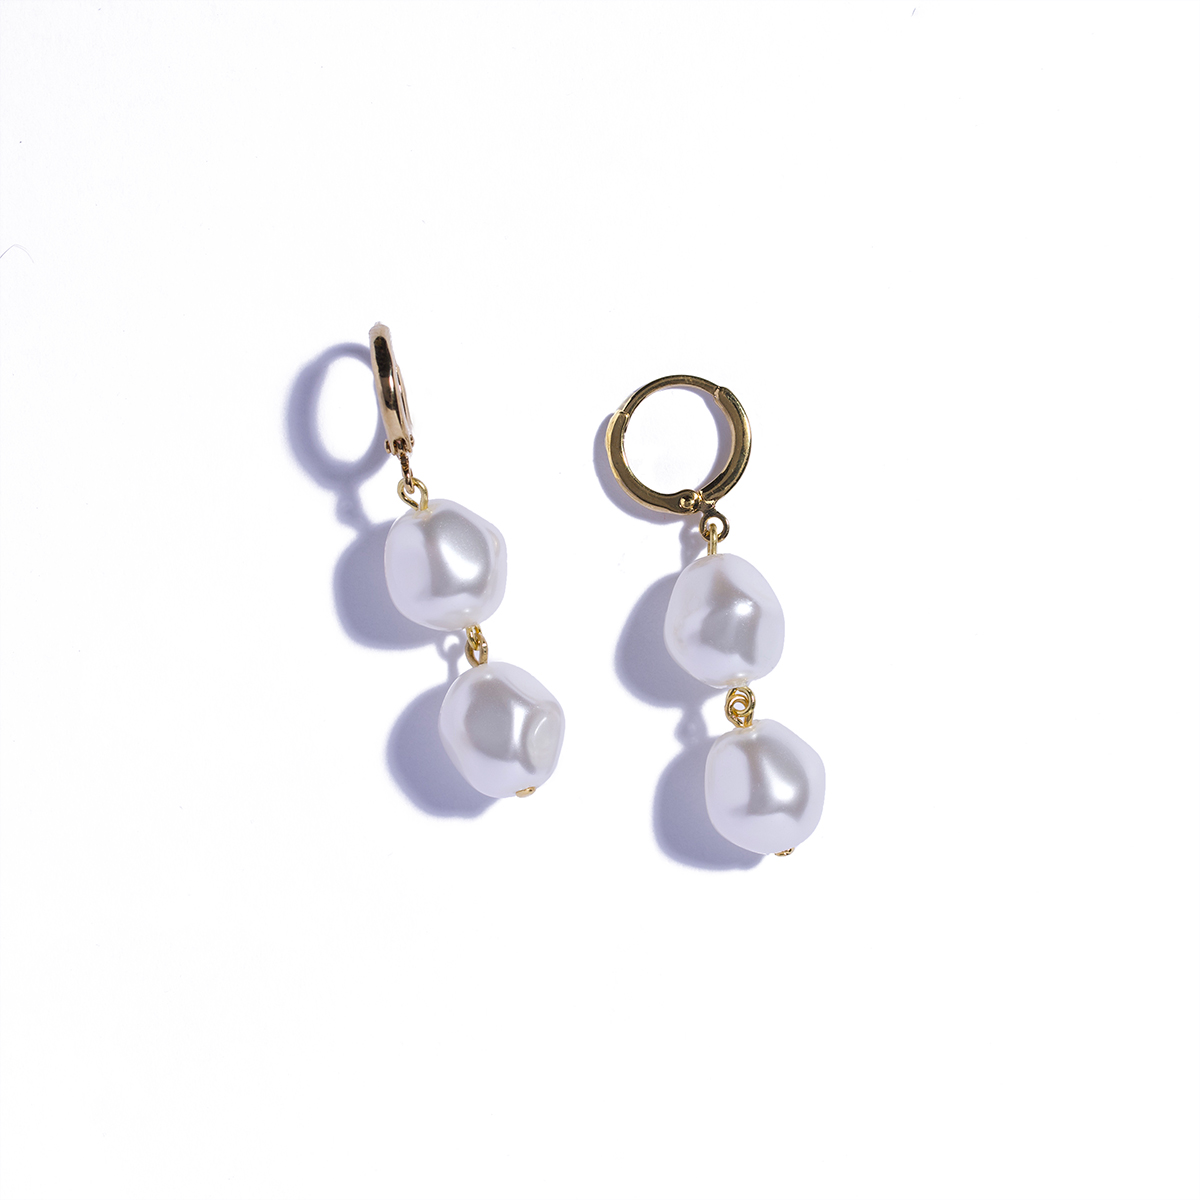 Minimalist Earrings Double hoop Earrings White Marble Earrings Gift For Her Raw stone jewelry Best Selling Jewelry,Gold Dangle Earrings